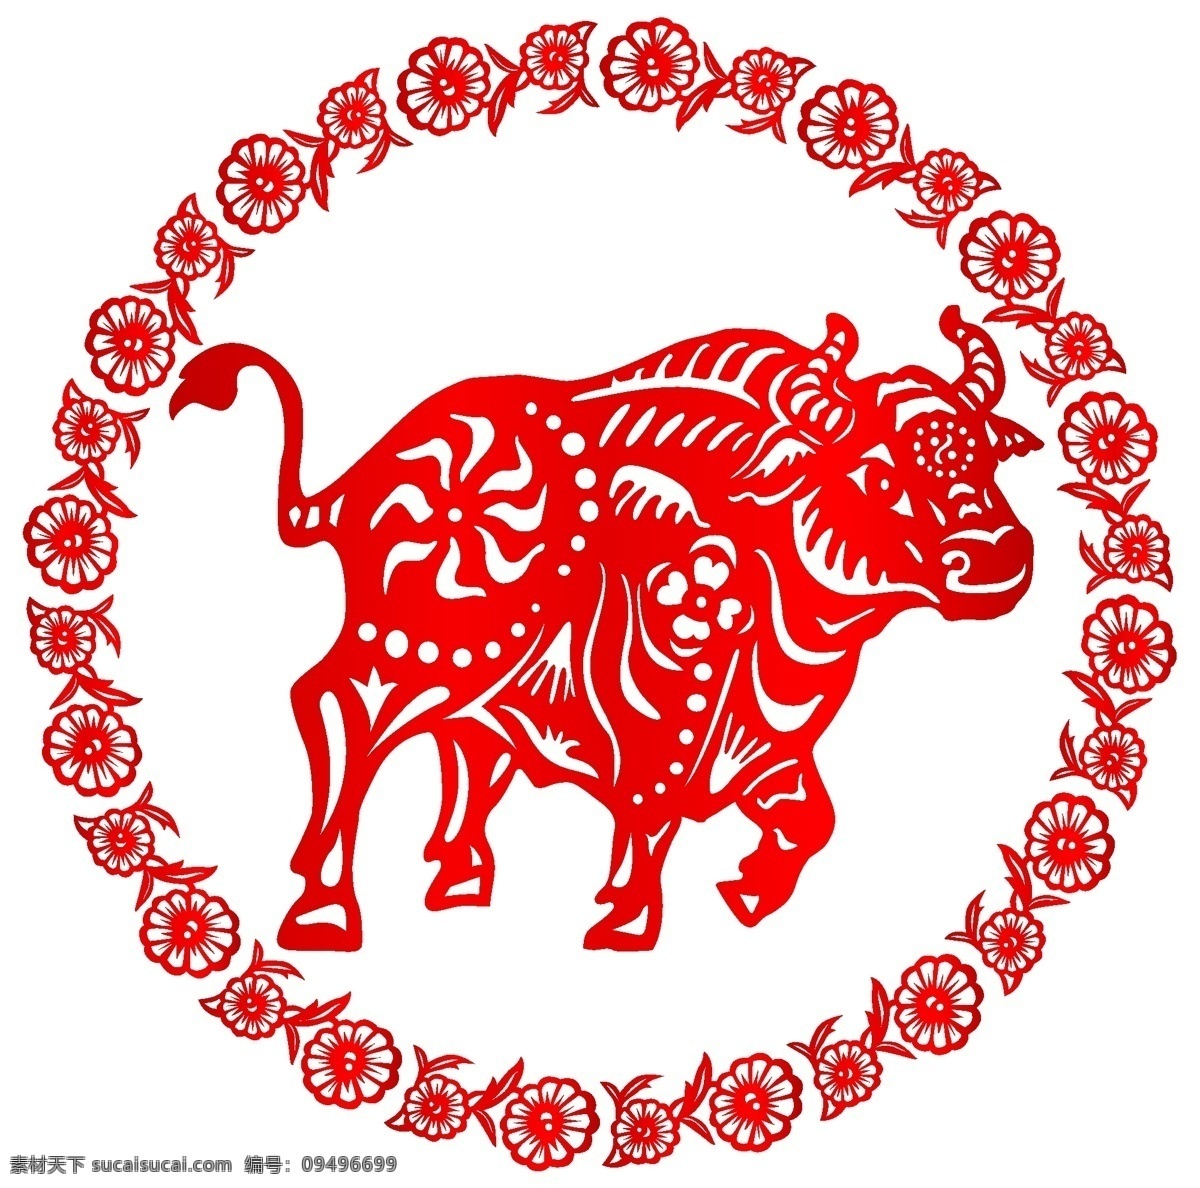 牛 中国 风 民族 生肖 剪纸 矢量图 圆形 精美红色 花边 12生肖 民族特色 中国元素 文化